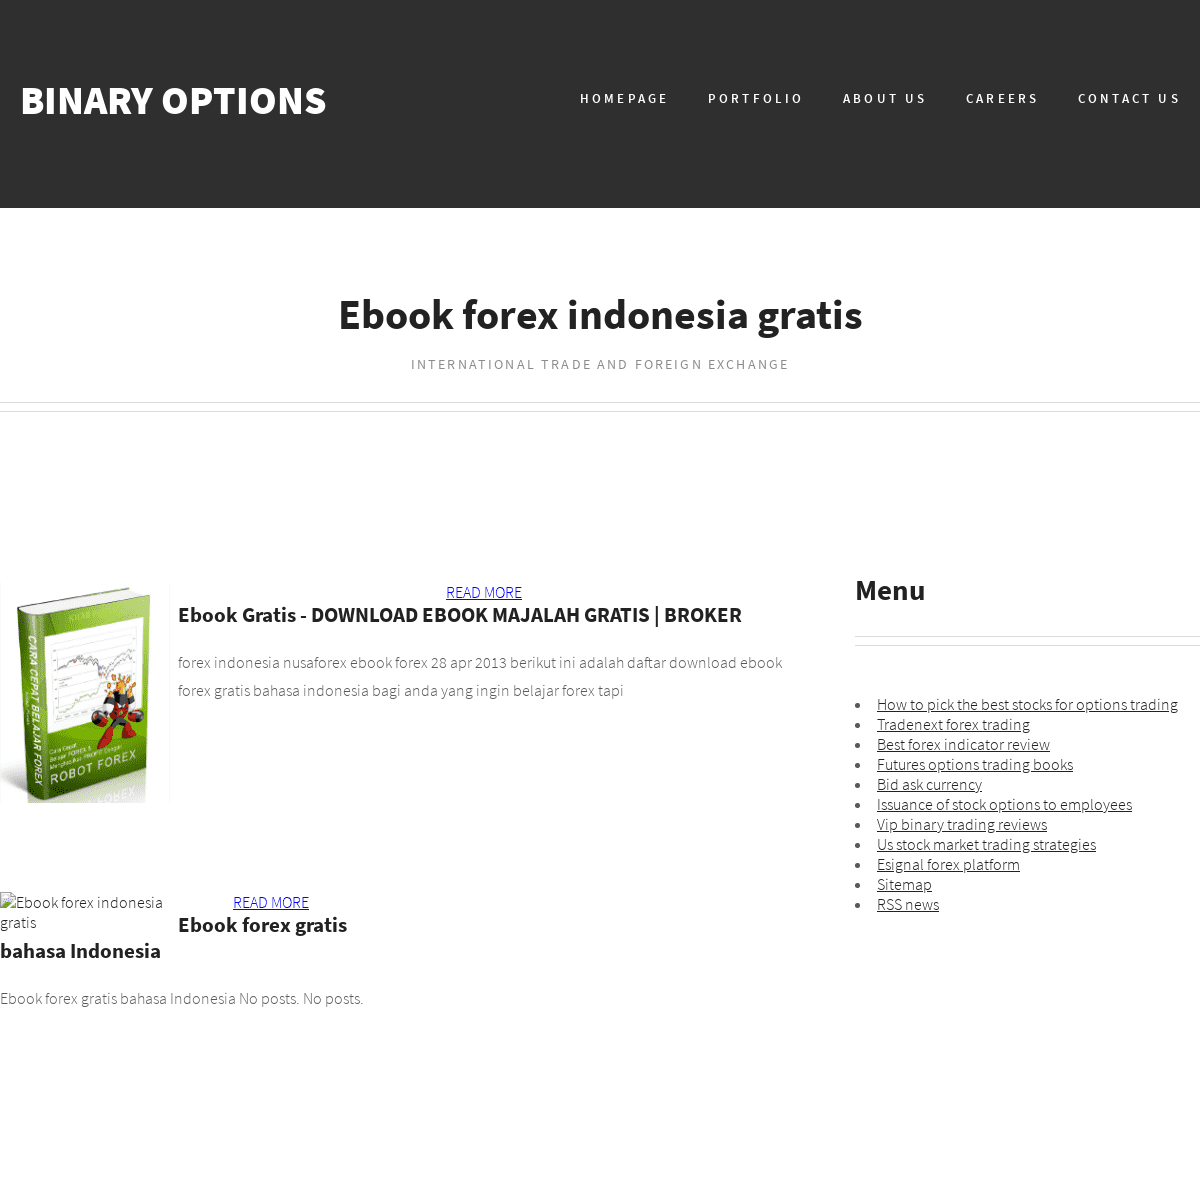 Ebook forex indonesia gratis